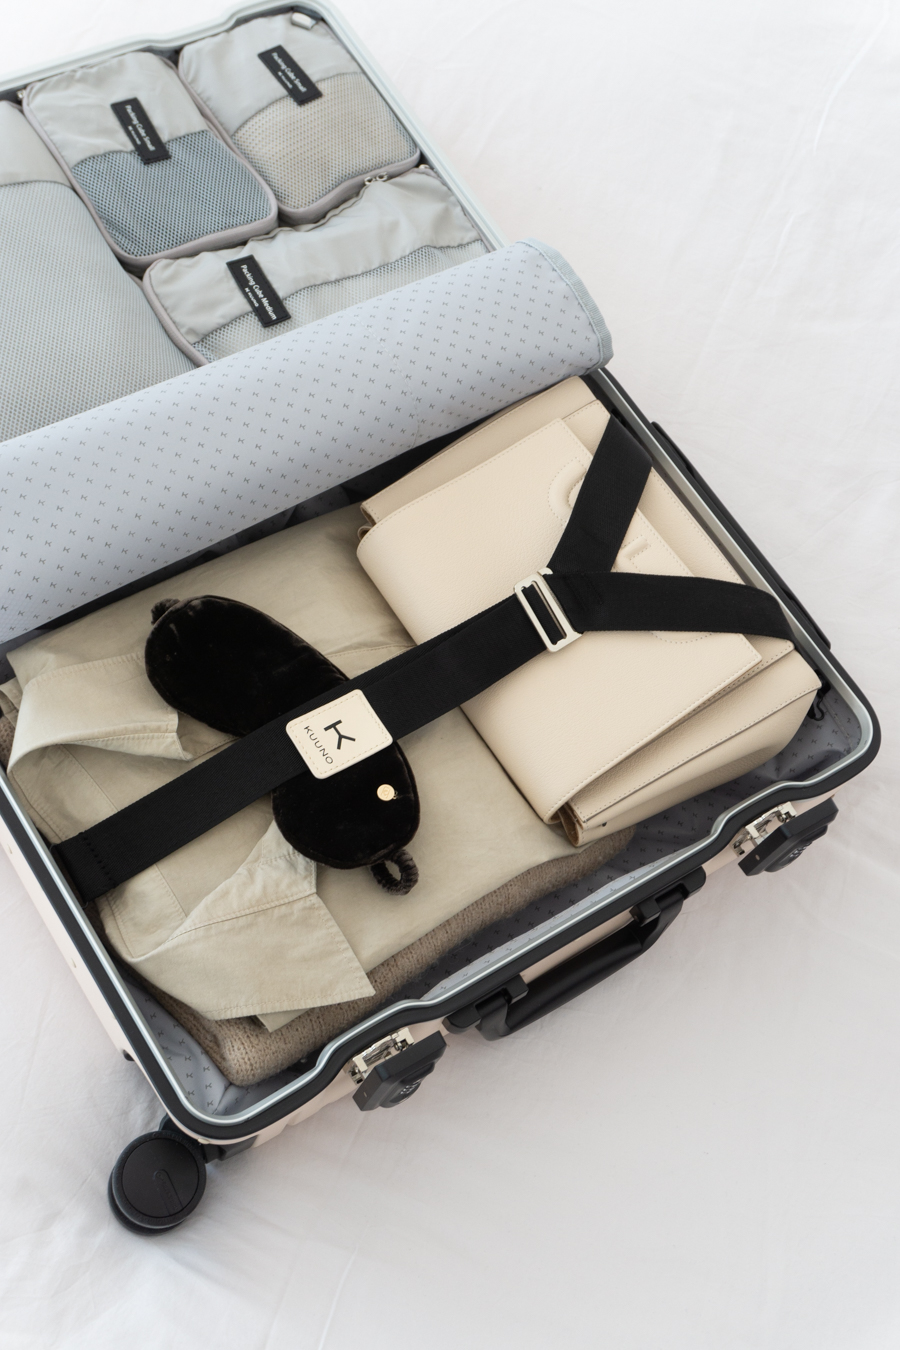 Kuuno Carry-On Suitcase, Designer Luggage, Minimalist Travel Aesthetic, Neutral Style